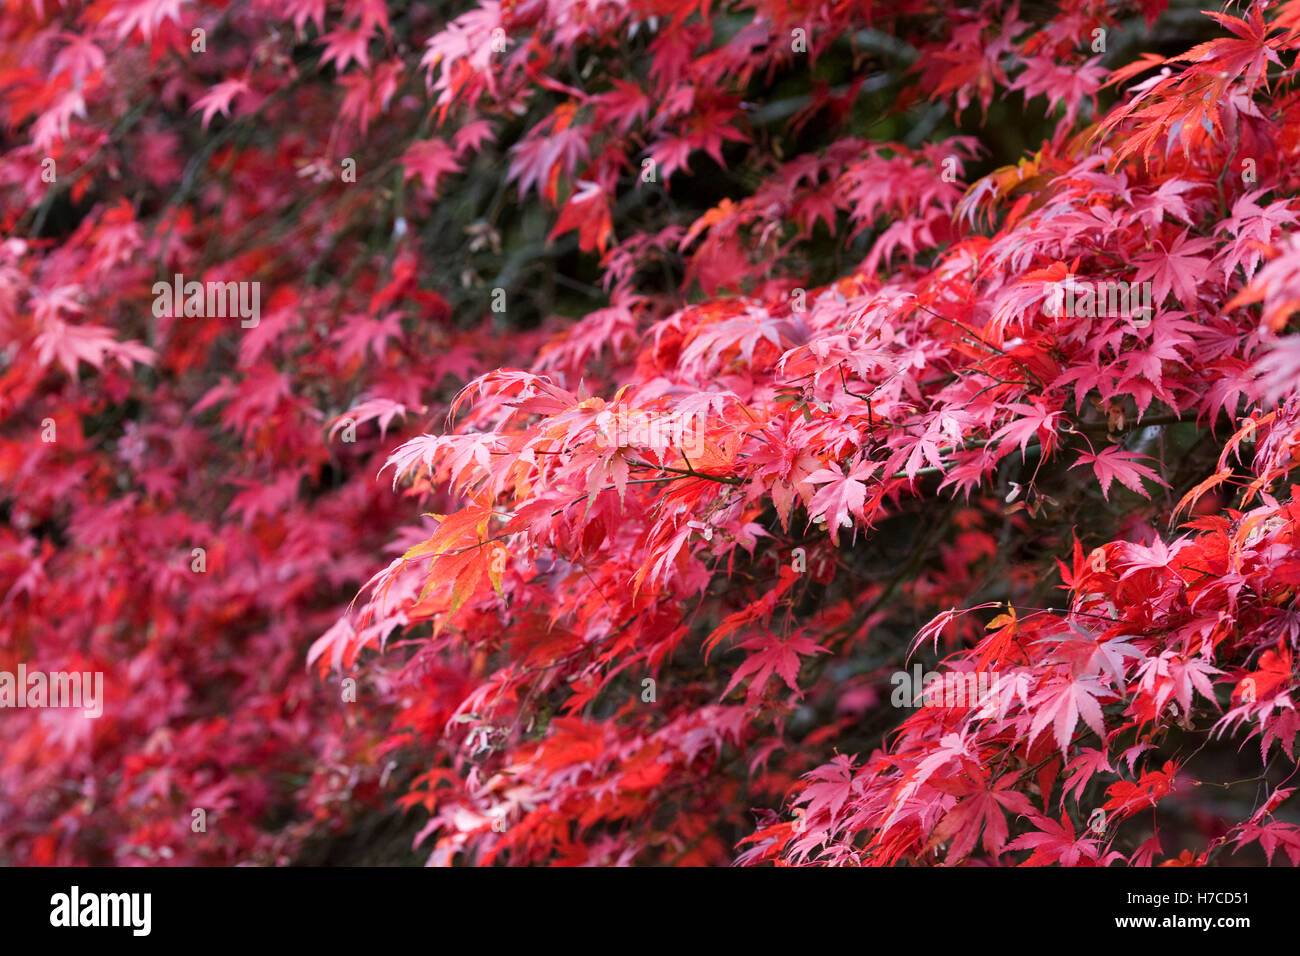 Acer palmatum leaves in Autumn. Stock Photo